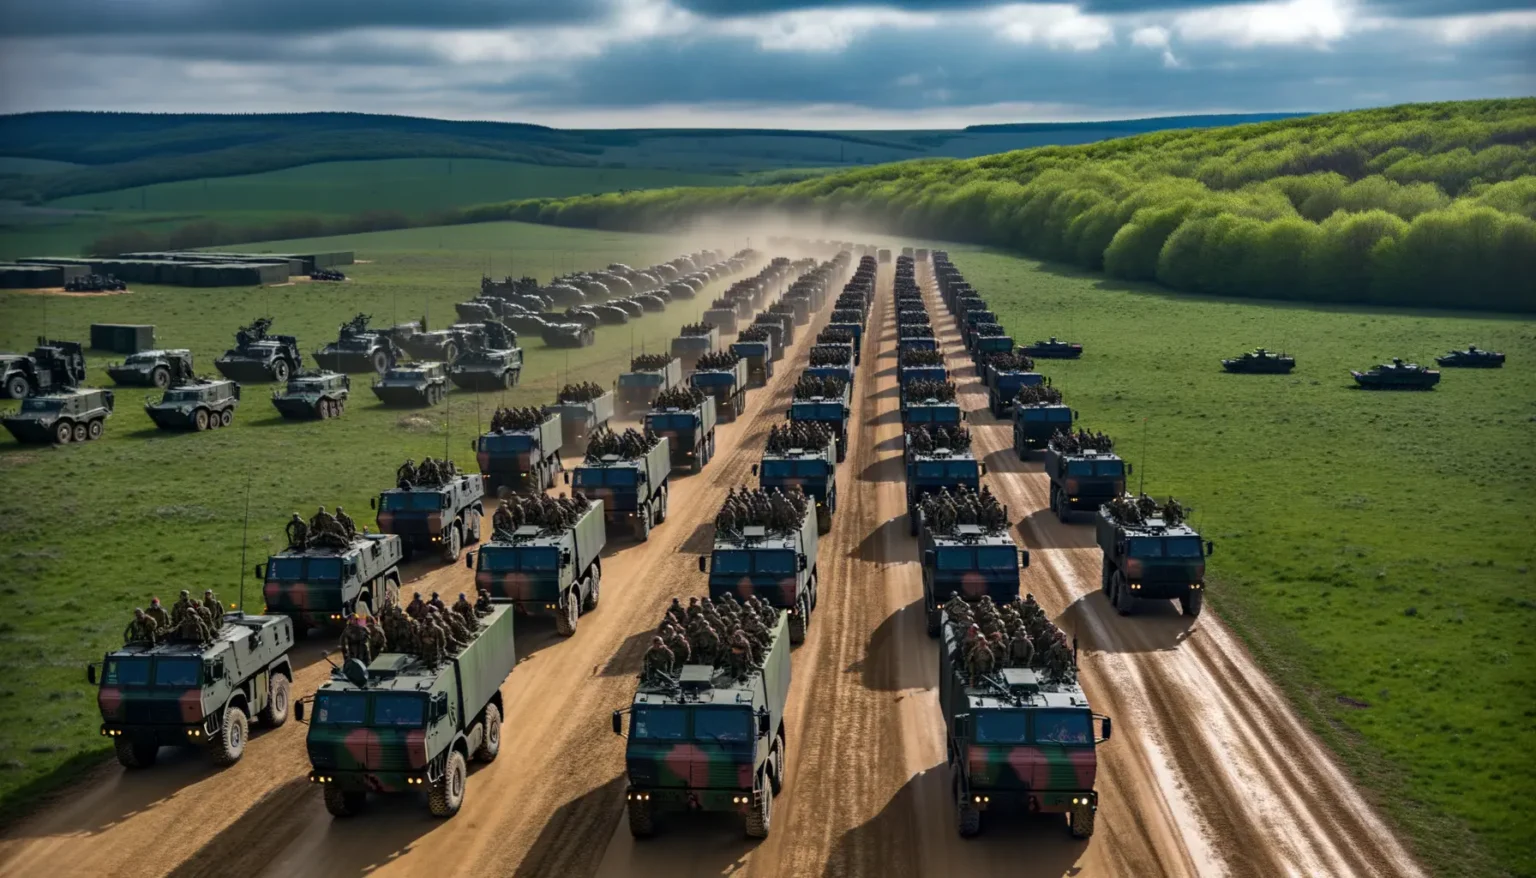 Eine Kolonne von Militärfahrzeugen fährt auf einer staubigen Straße durch eine grüne Hügellandschaft, während Panzer neben der Formation auf dem grünen Feld stationiert sind.